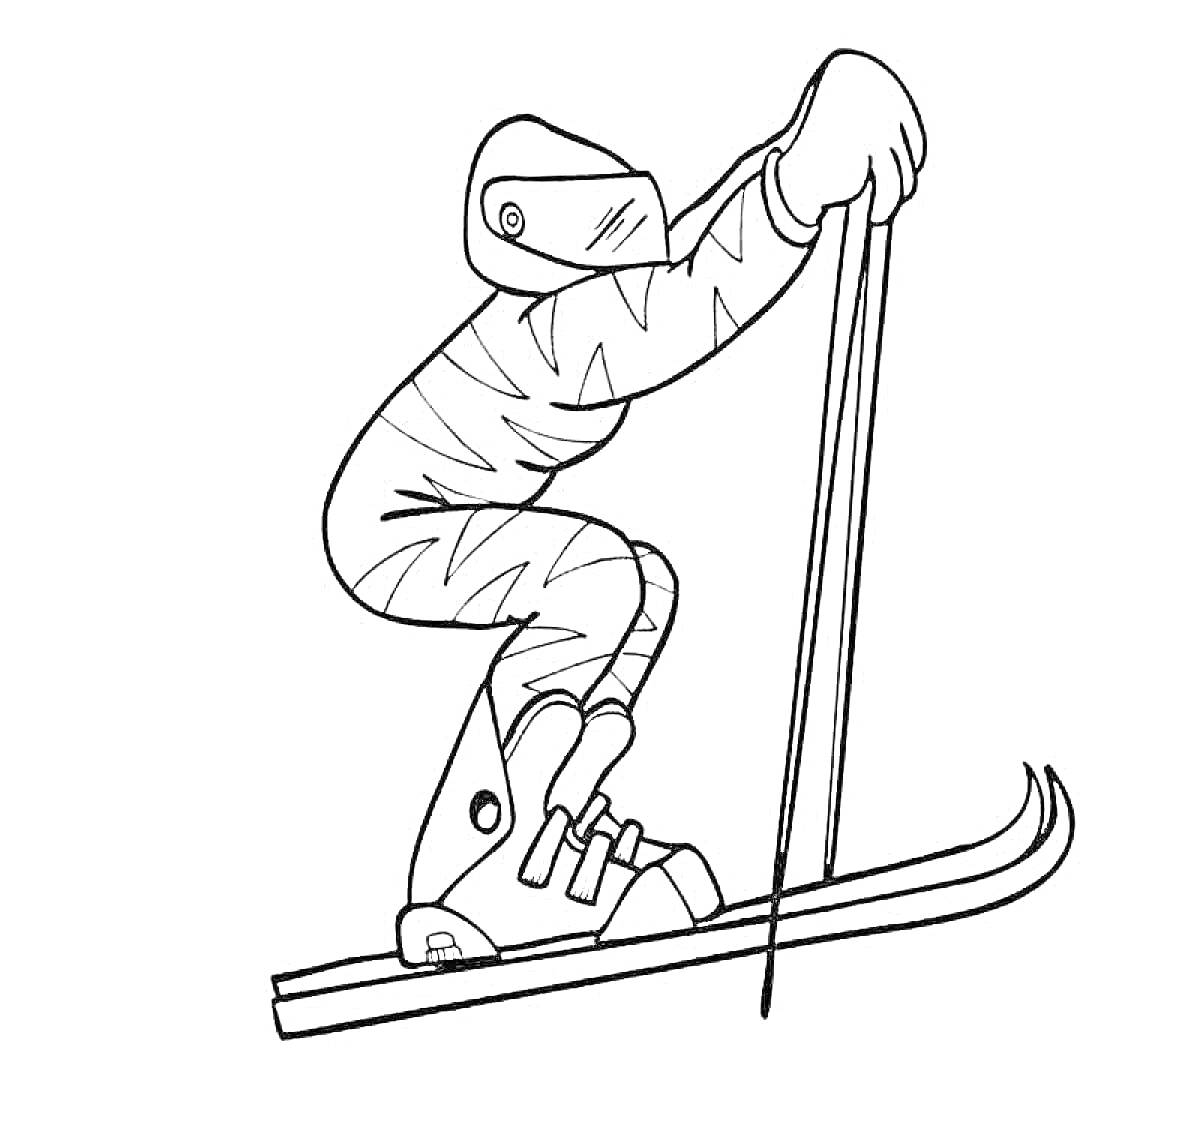 Раскраска Лыжник в защитном костюме с палками на лыжах